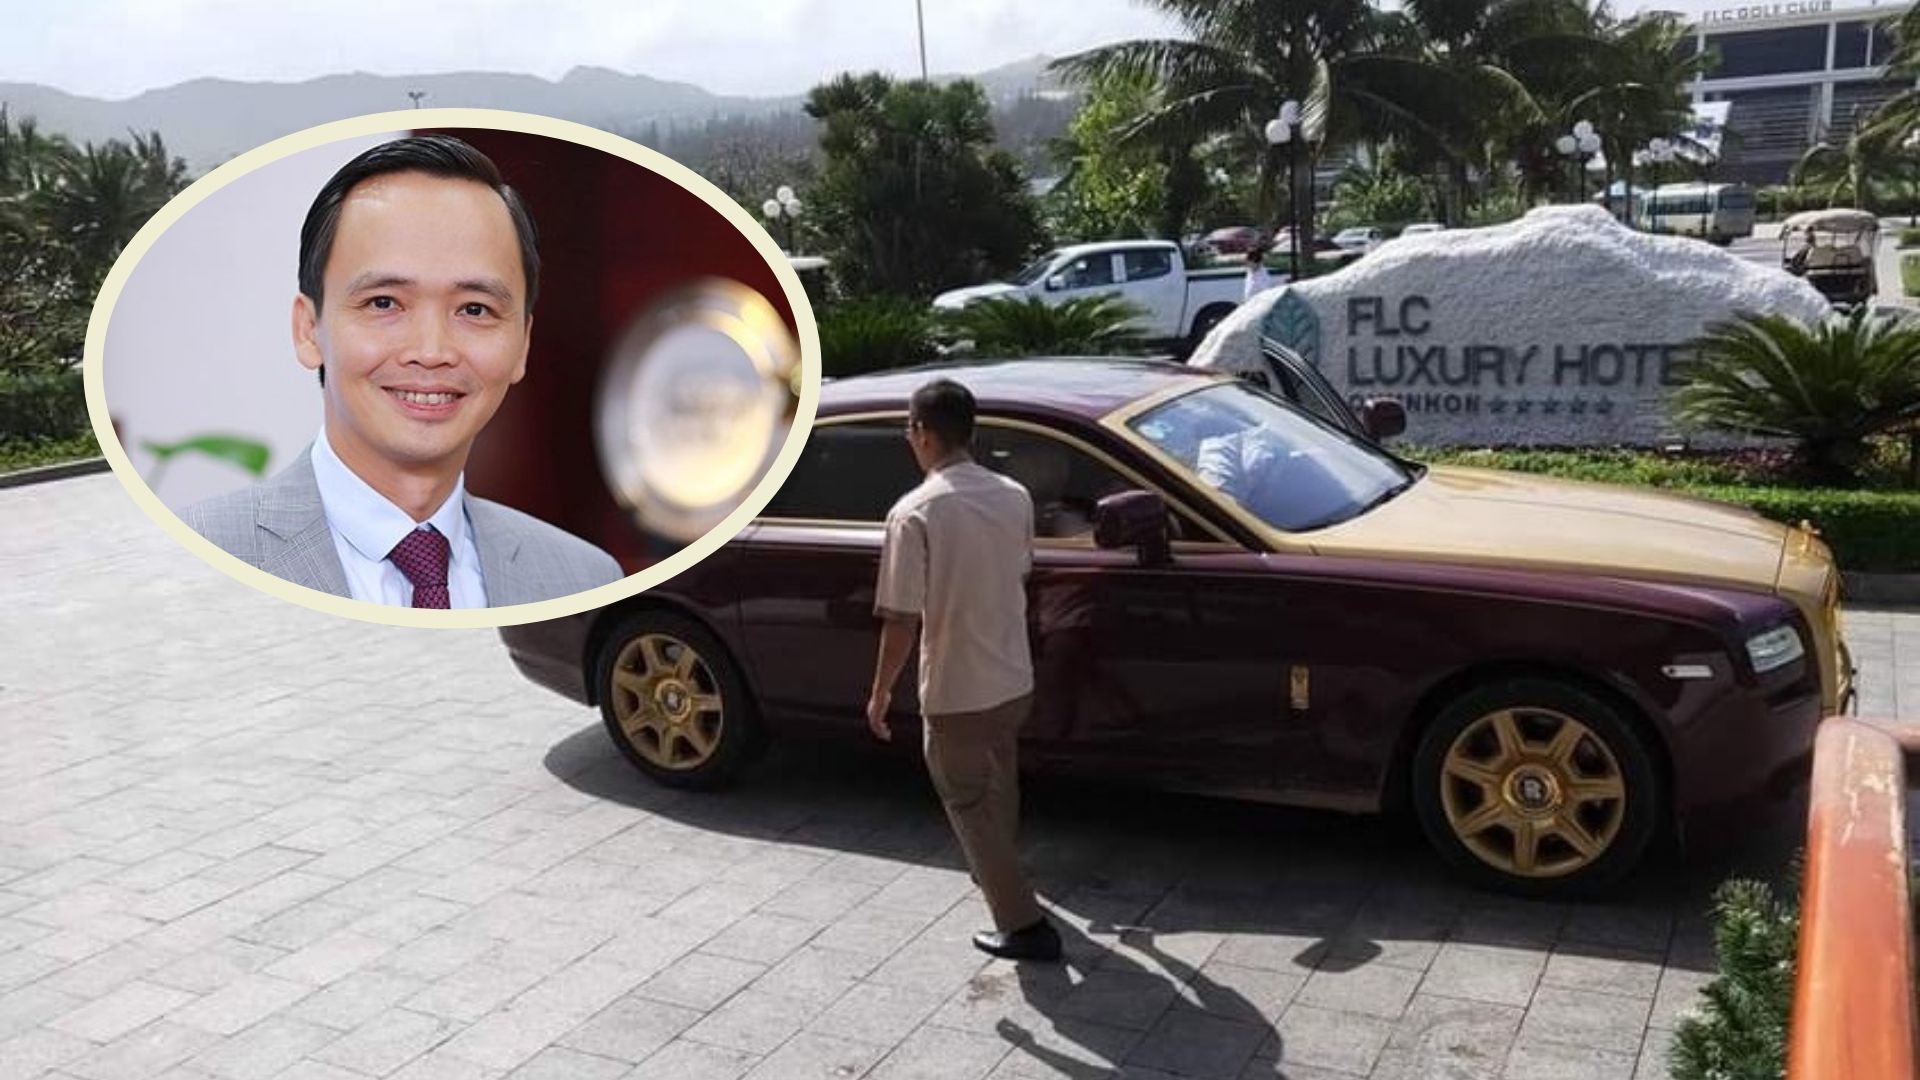 Xe RollsRoyce của ông Trịnh Văn Quyết được chủ mới rao bán giá bất ngờ   Báo Dân trí